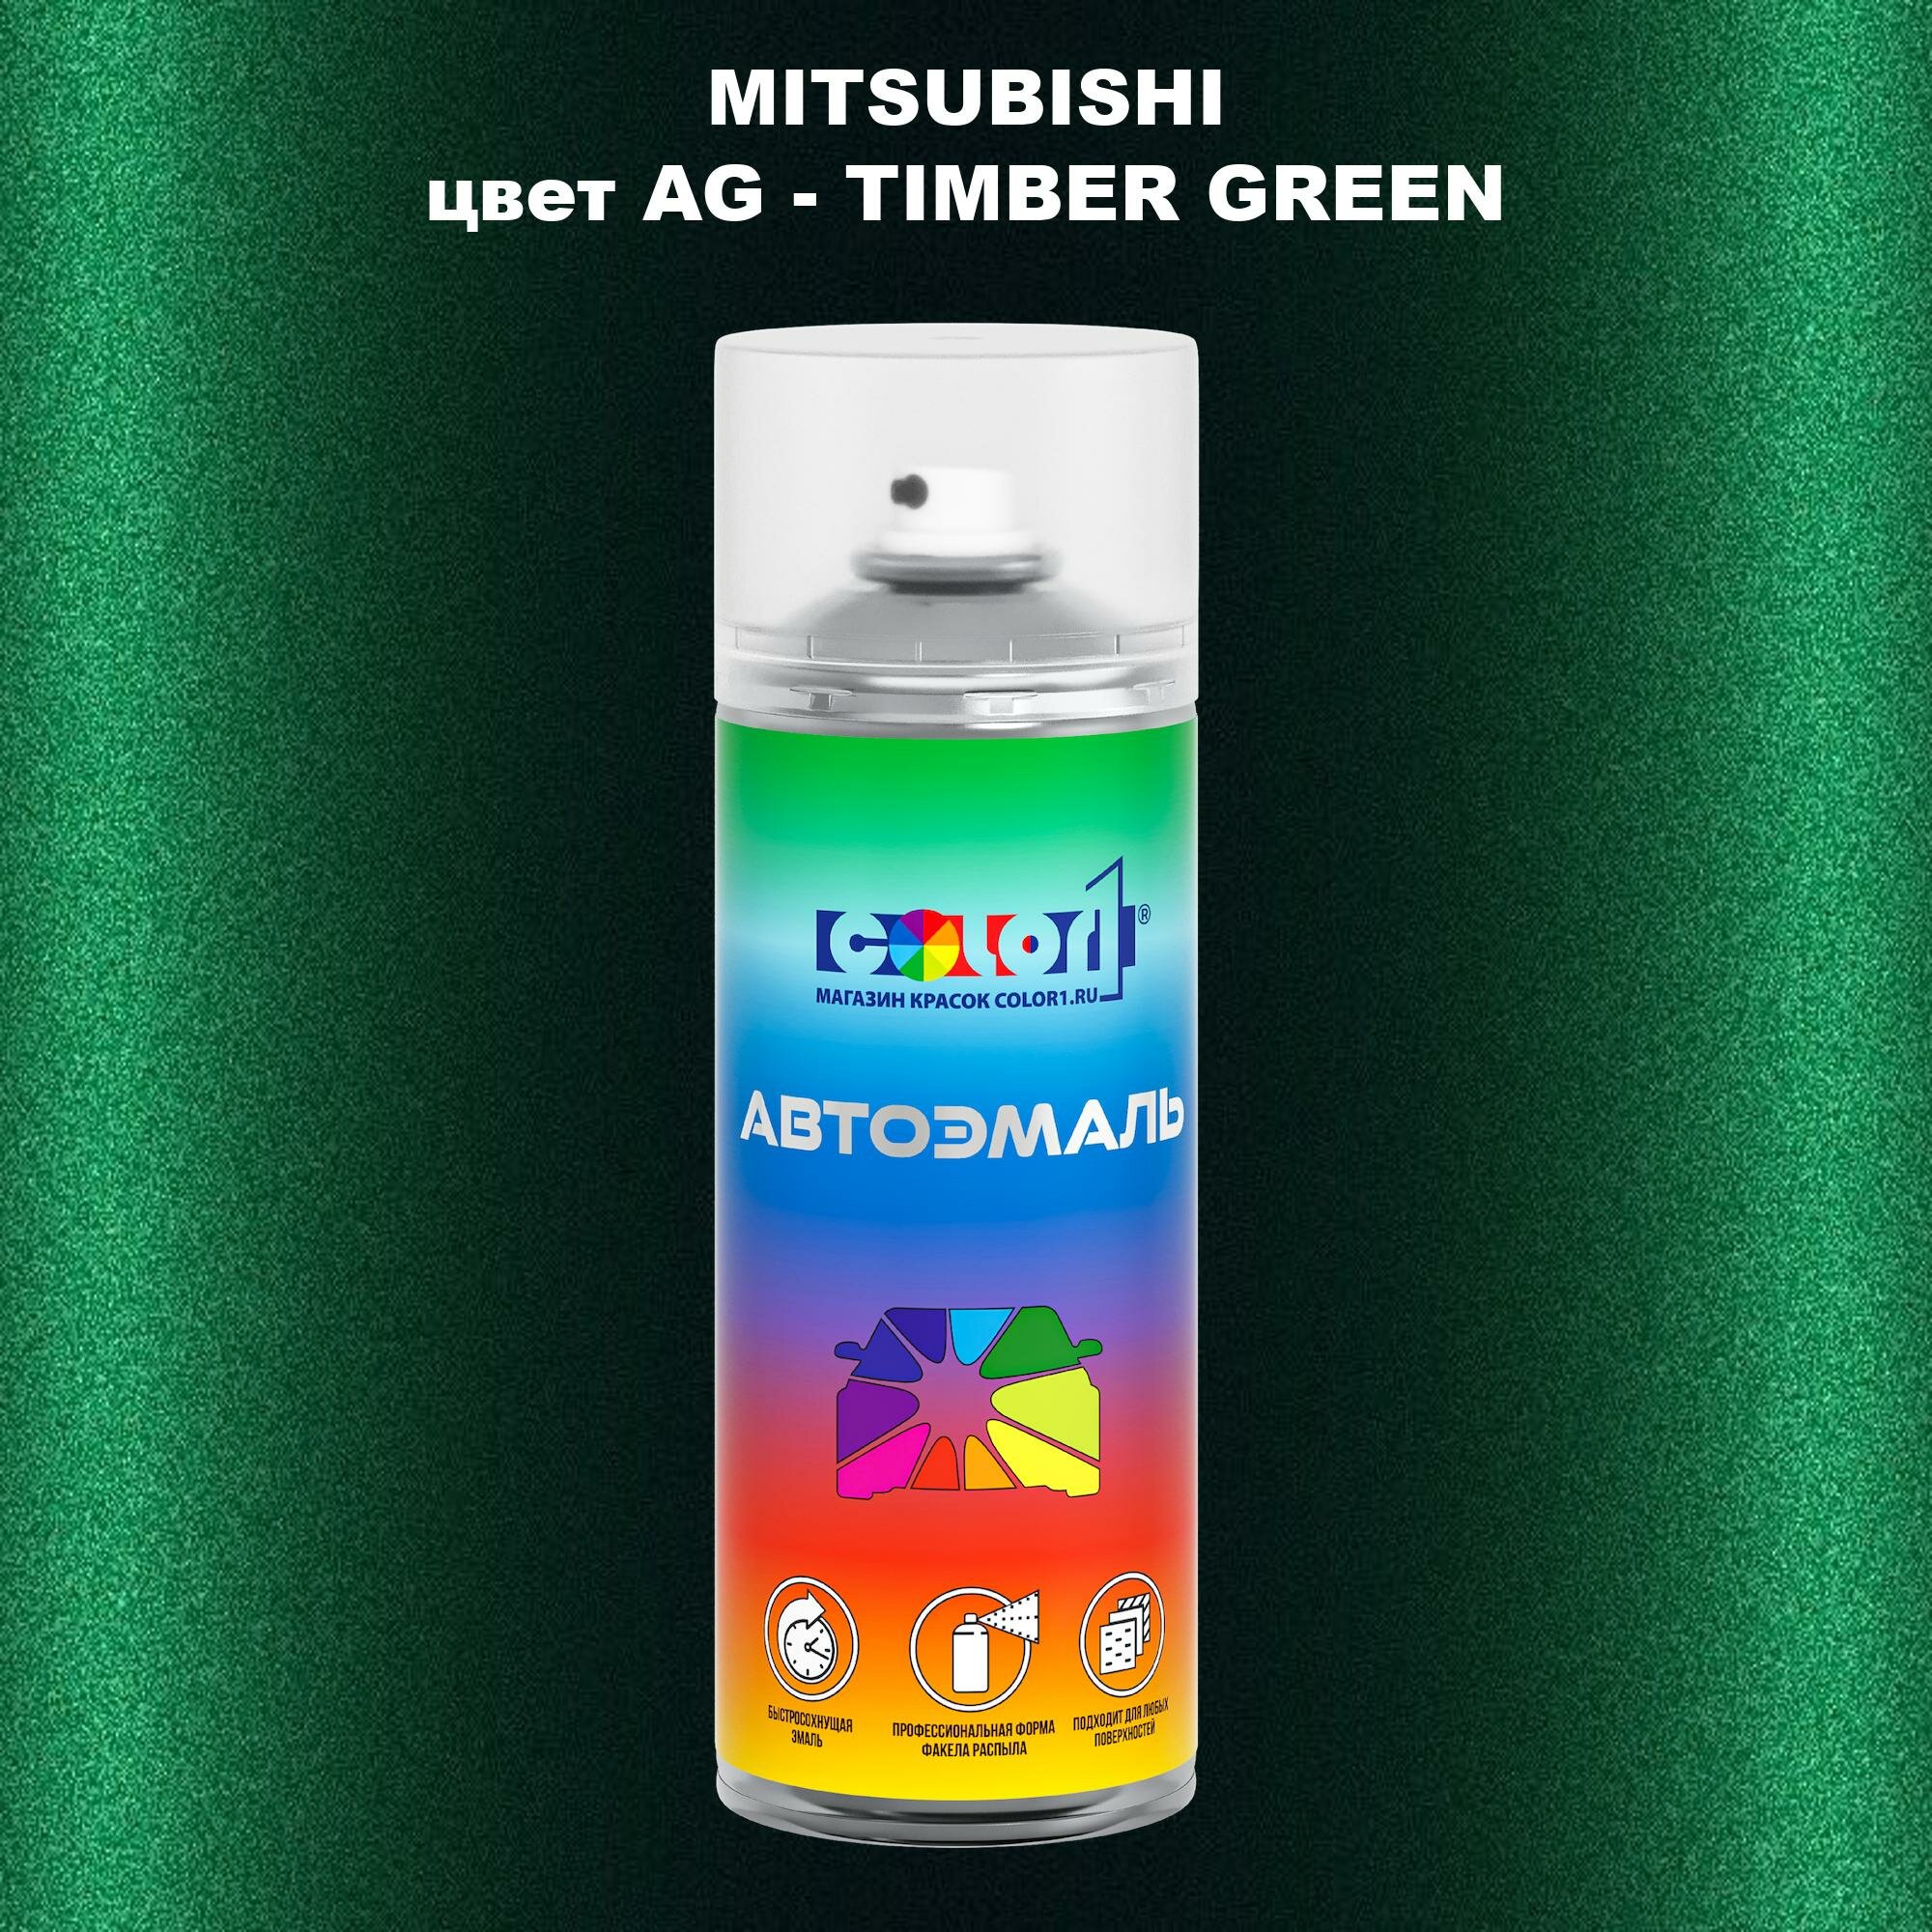 Аэрозольная краска COLOR1 для MITSUBISHI, цвет AG - TIMBER GREEN